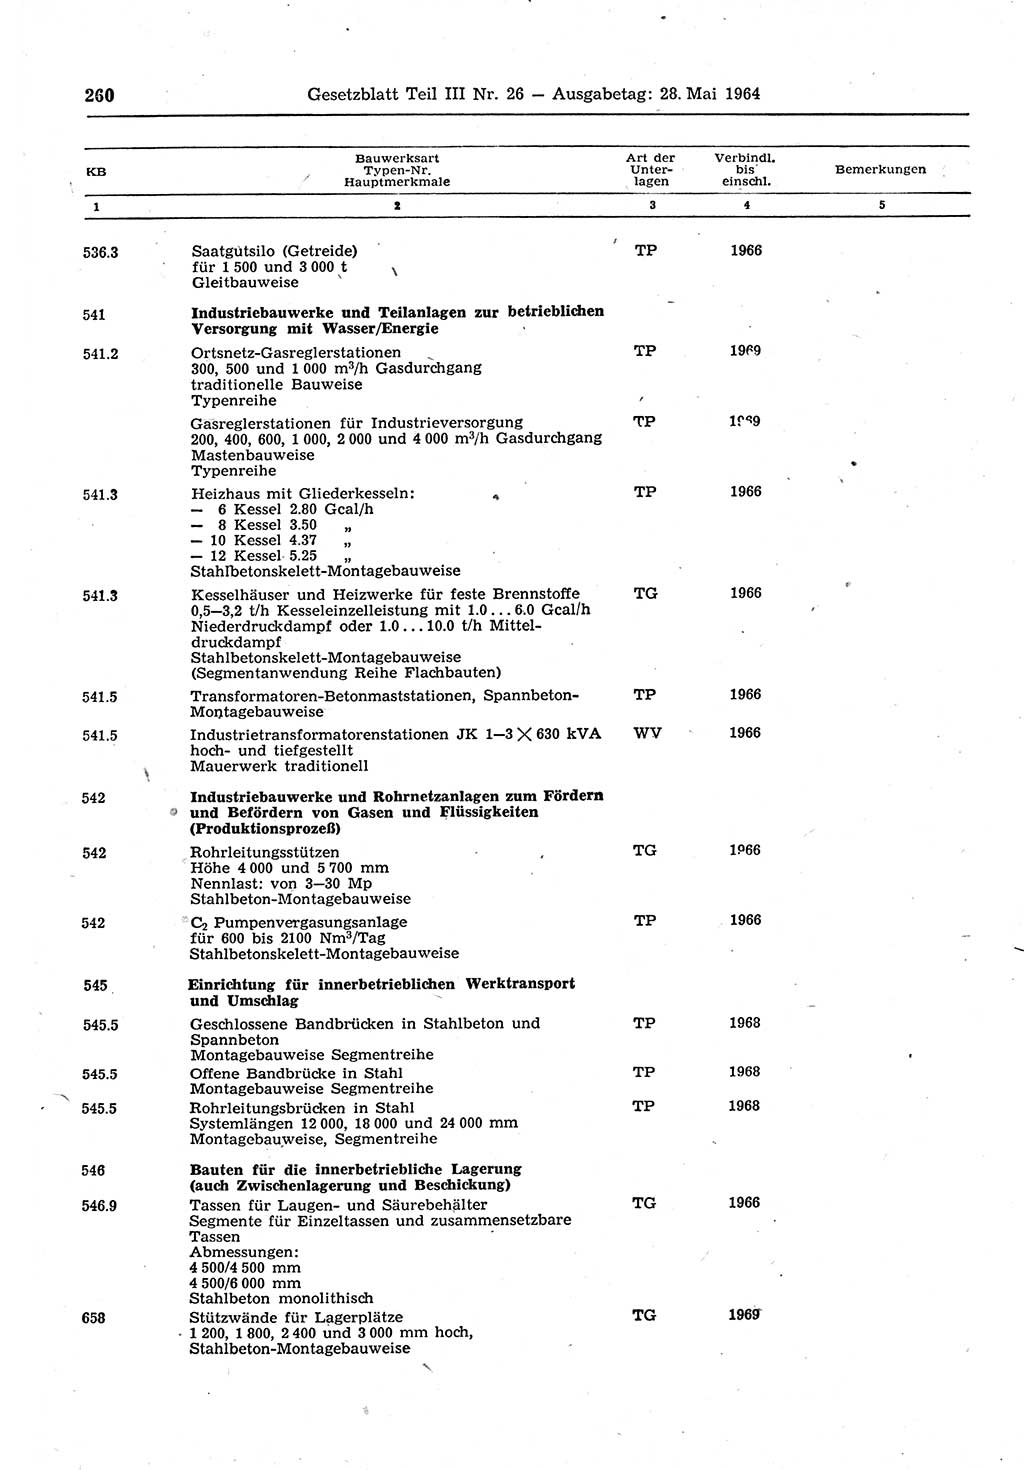 Gesetzblatt (GBl.) der Deutschen Demokratischen Republik (DDR) Teil ⅠⅠⅠ 1964, Seite 260 (GBl. DDR ⅠⅠⅠ 1964, S. 260)